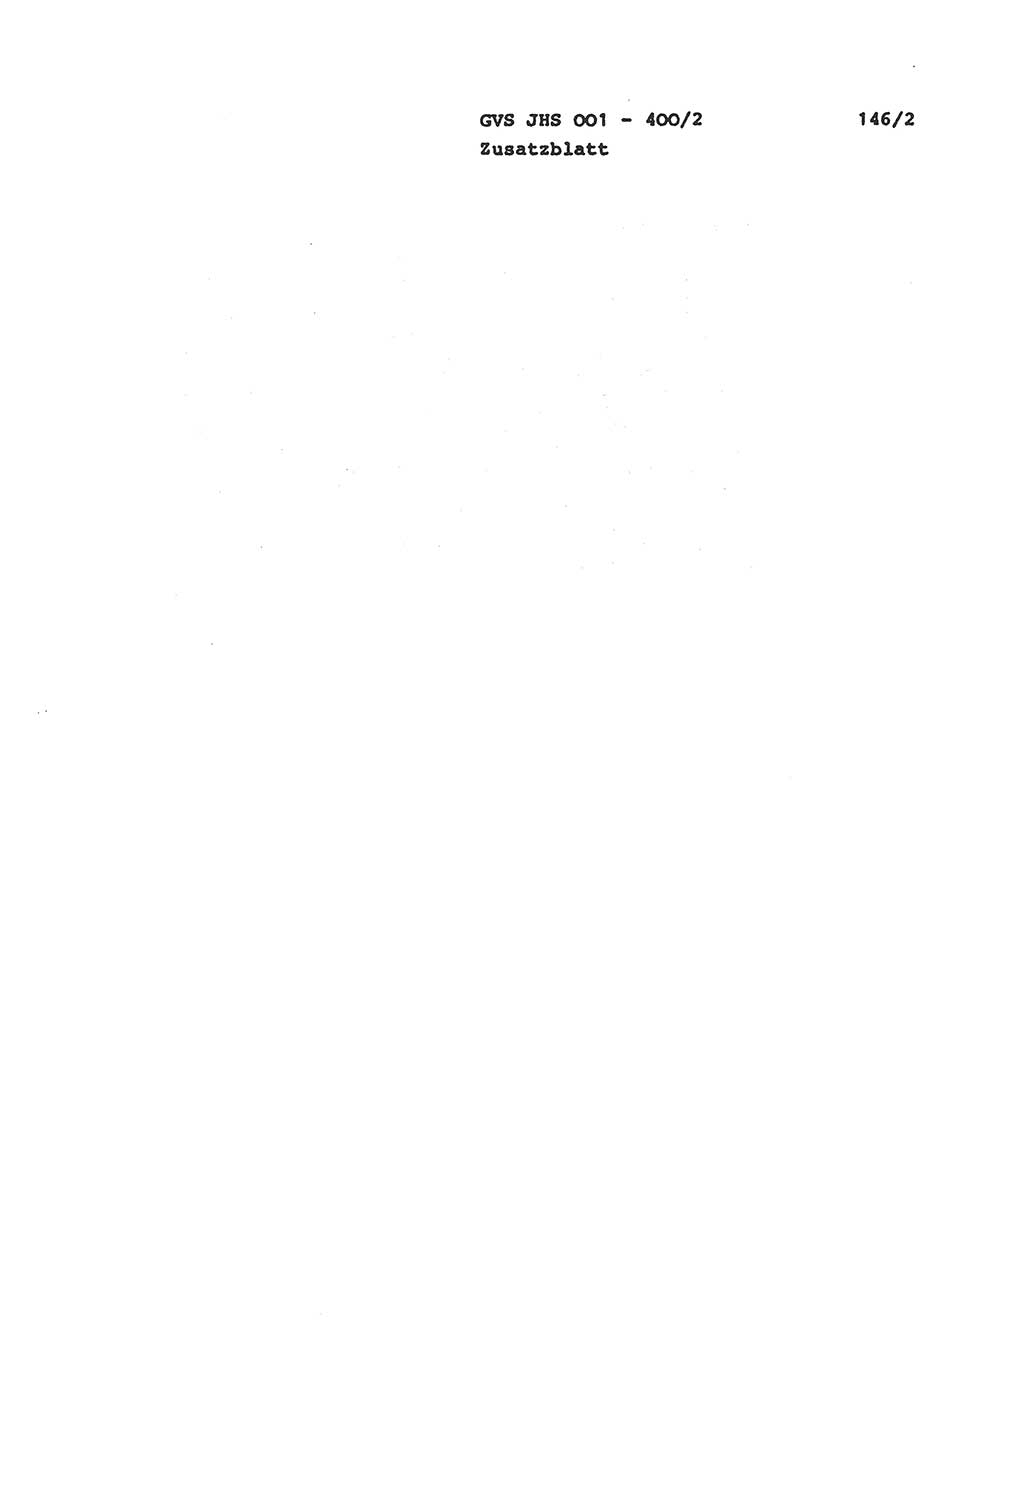 Wörterbuch der politisch-operativen Arbeit, Ministerium für Staatssicherheit (MfS) [Deutsche Demokratische Republik (DDR)], Juristische Hochschule (JHS), Geheime Verschlußsache (GVS) o001-400/81, Potsdam 1985, Blatt 146/2 (Wb. pol.-op. Arb. MfS DDR JHS GVS o001-400/81 1985, Bl. 146/2)